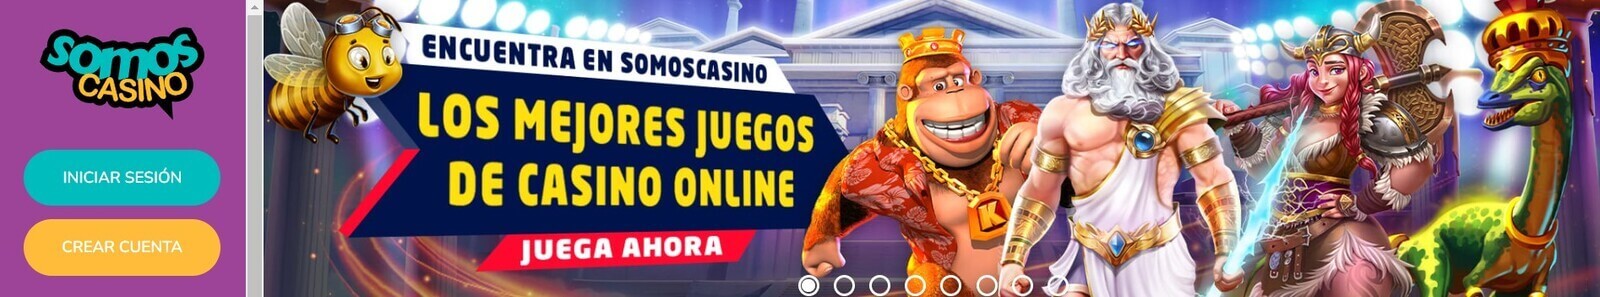 Página web de Somos Casino